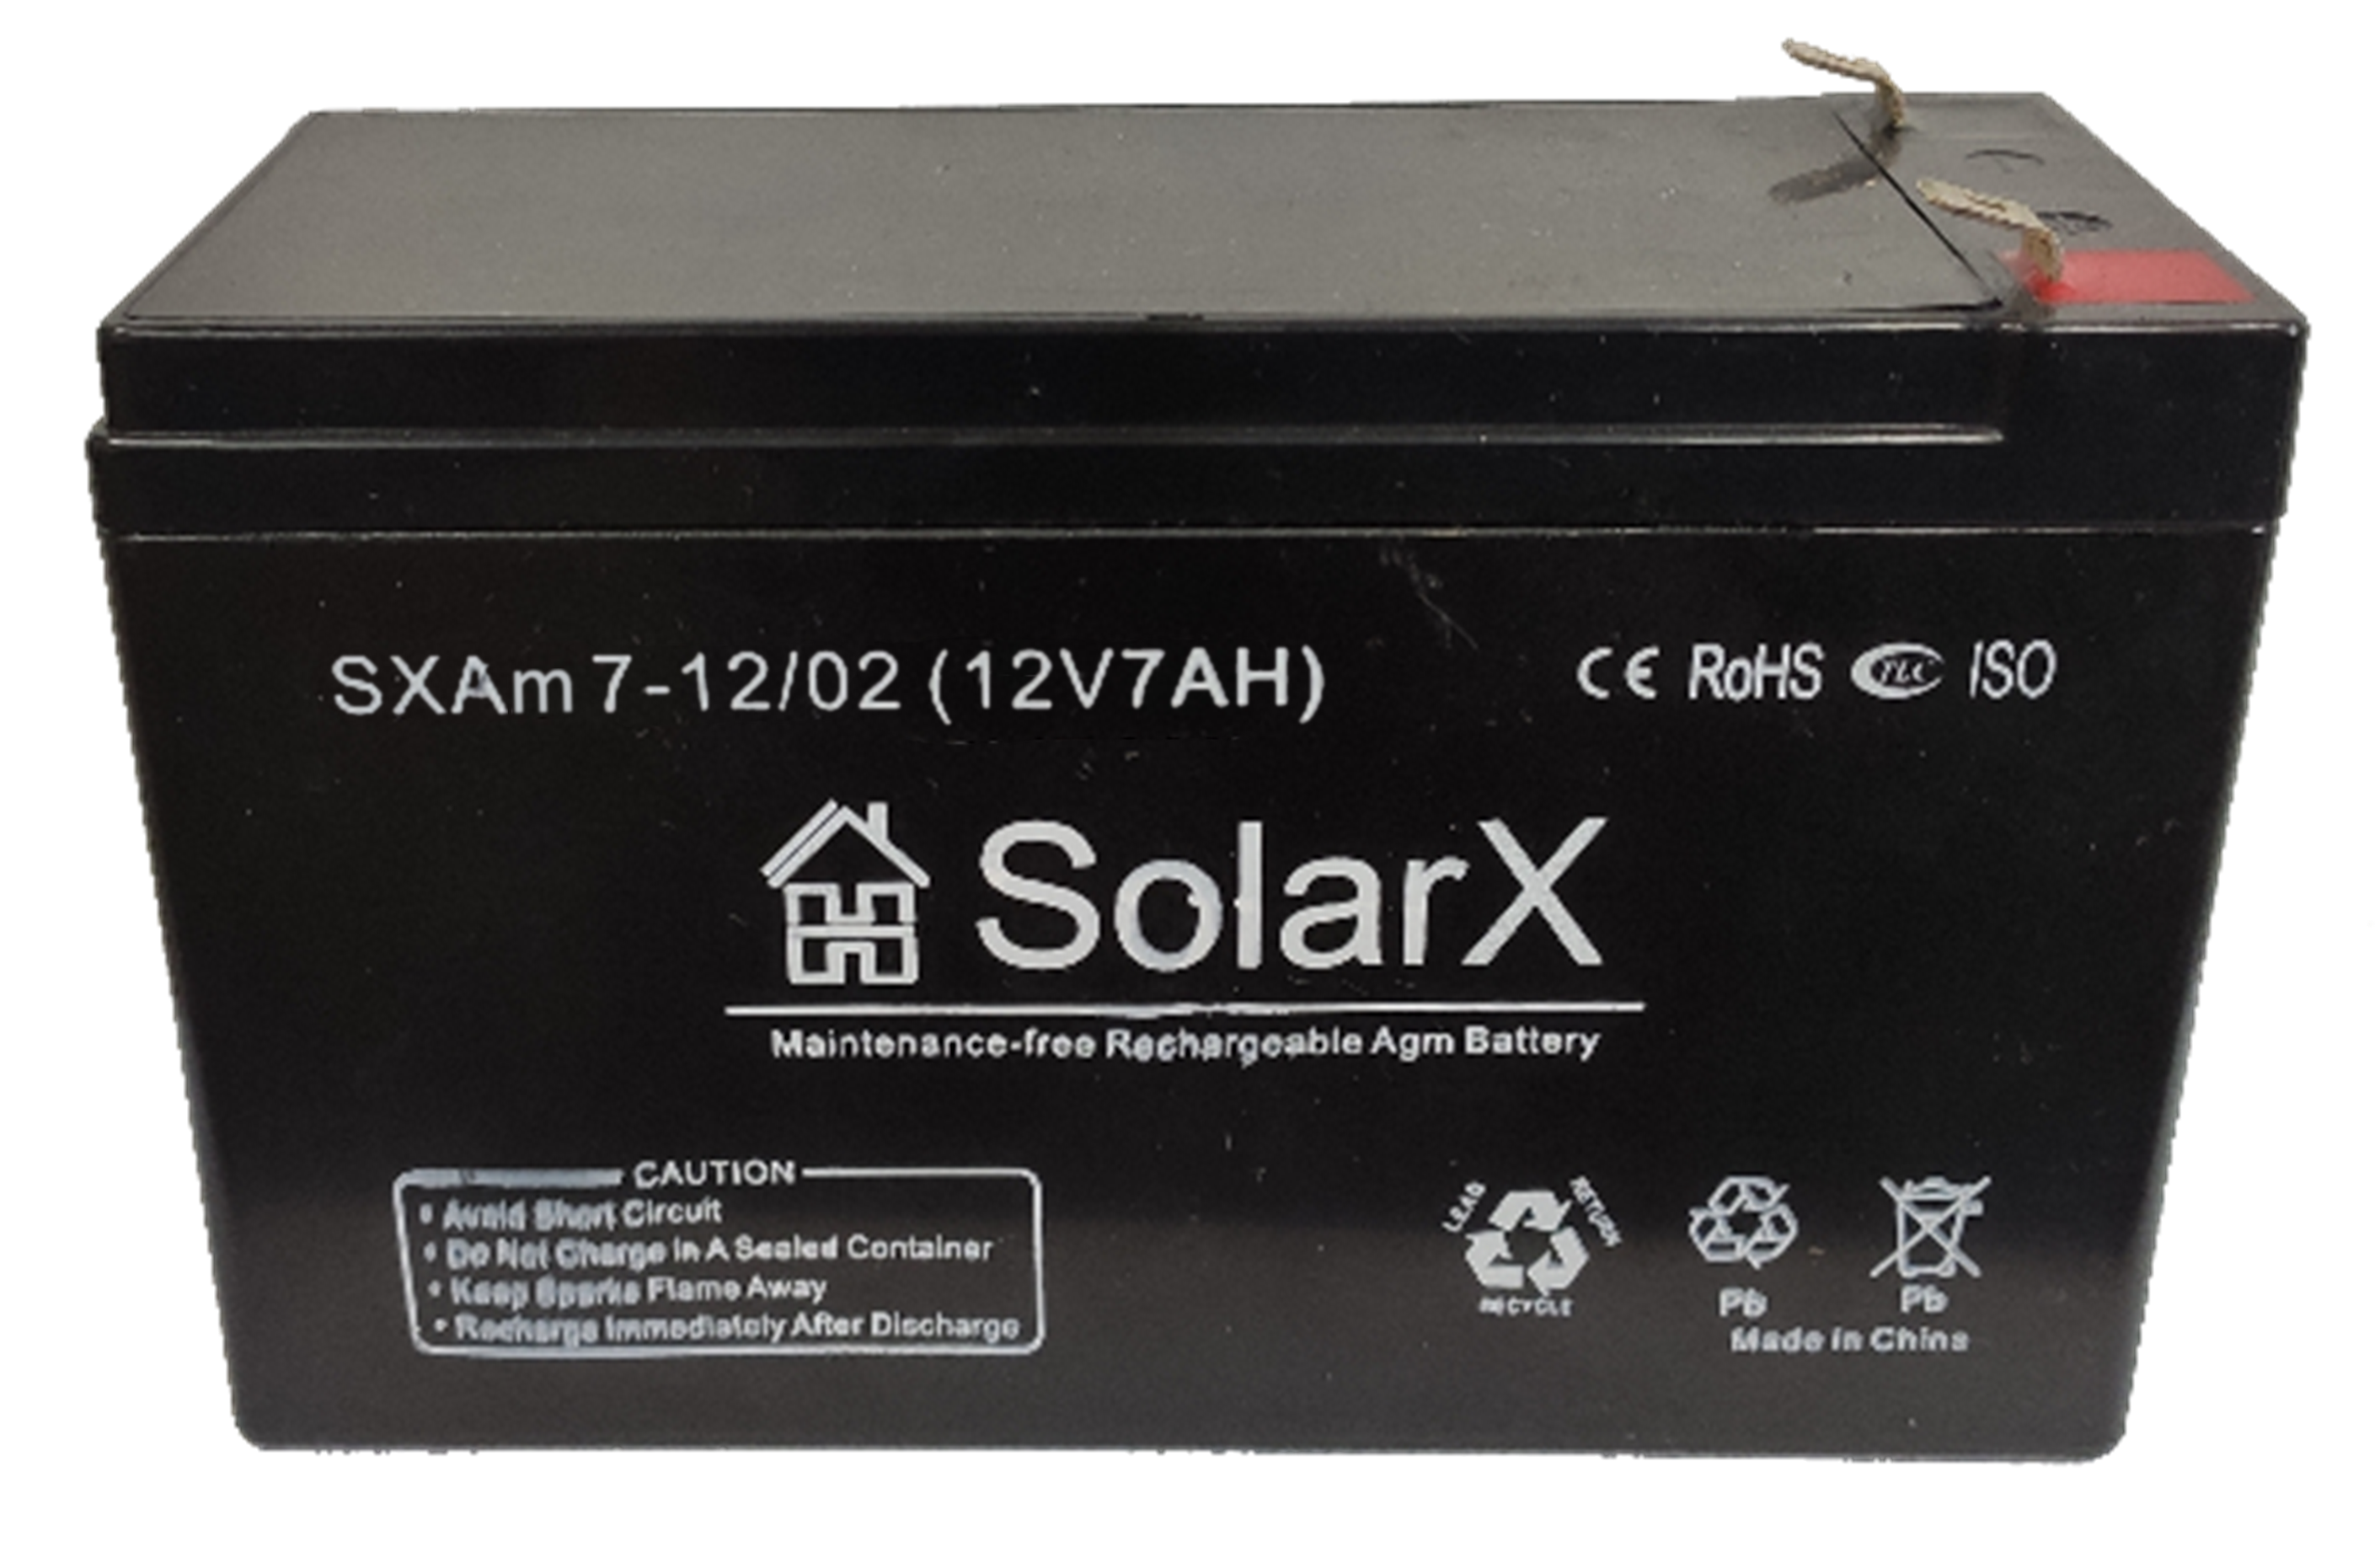 Solarx sxam 7 12